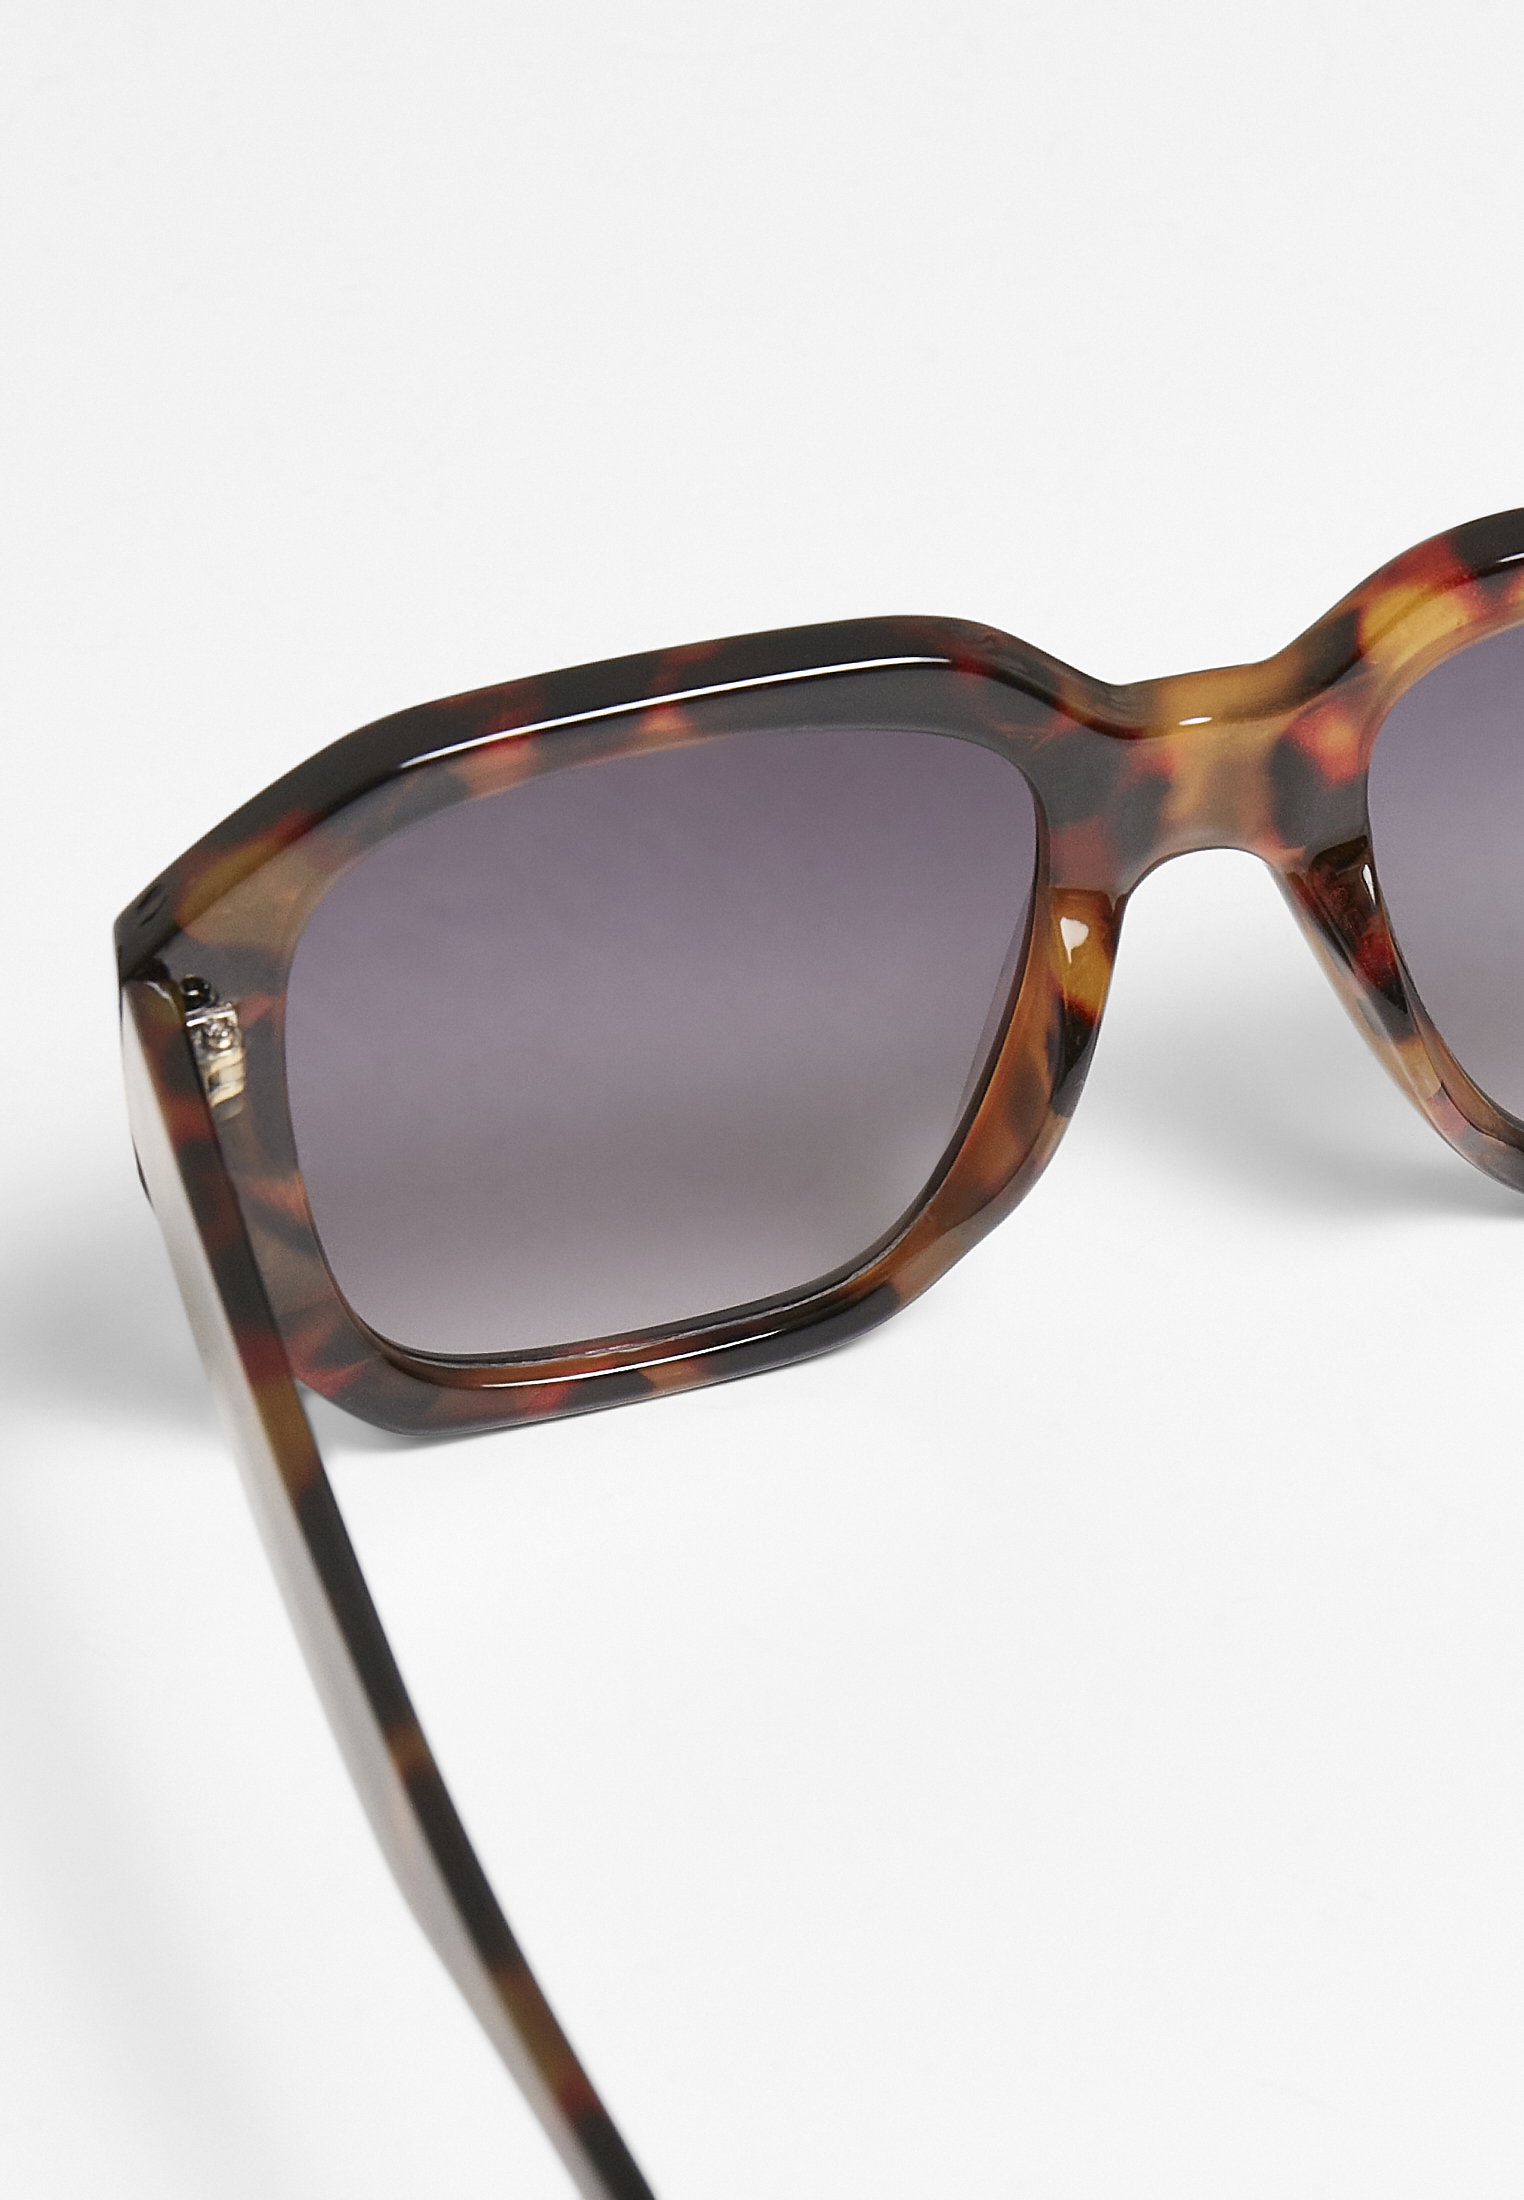 Sonnenbrillen 113 Sunglasses UC in Farbe brown leo/black